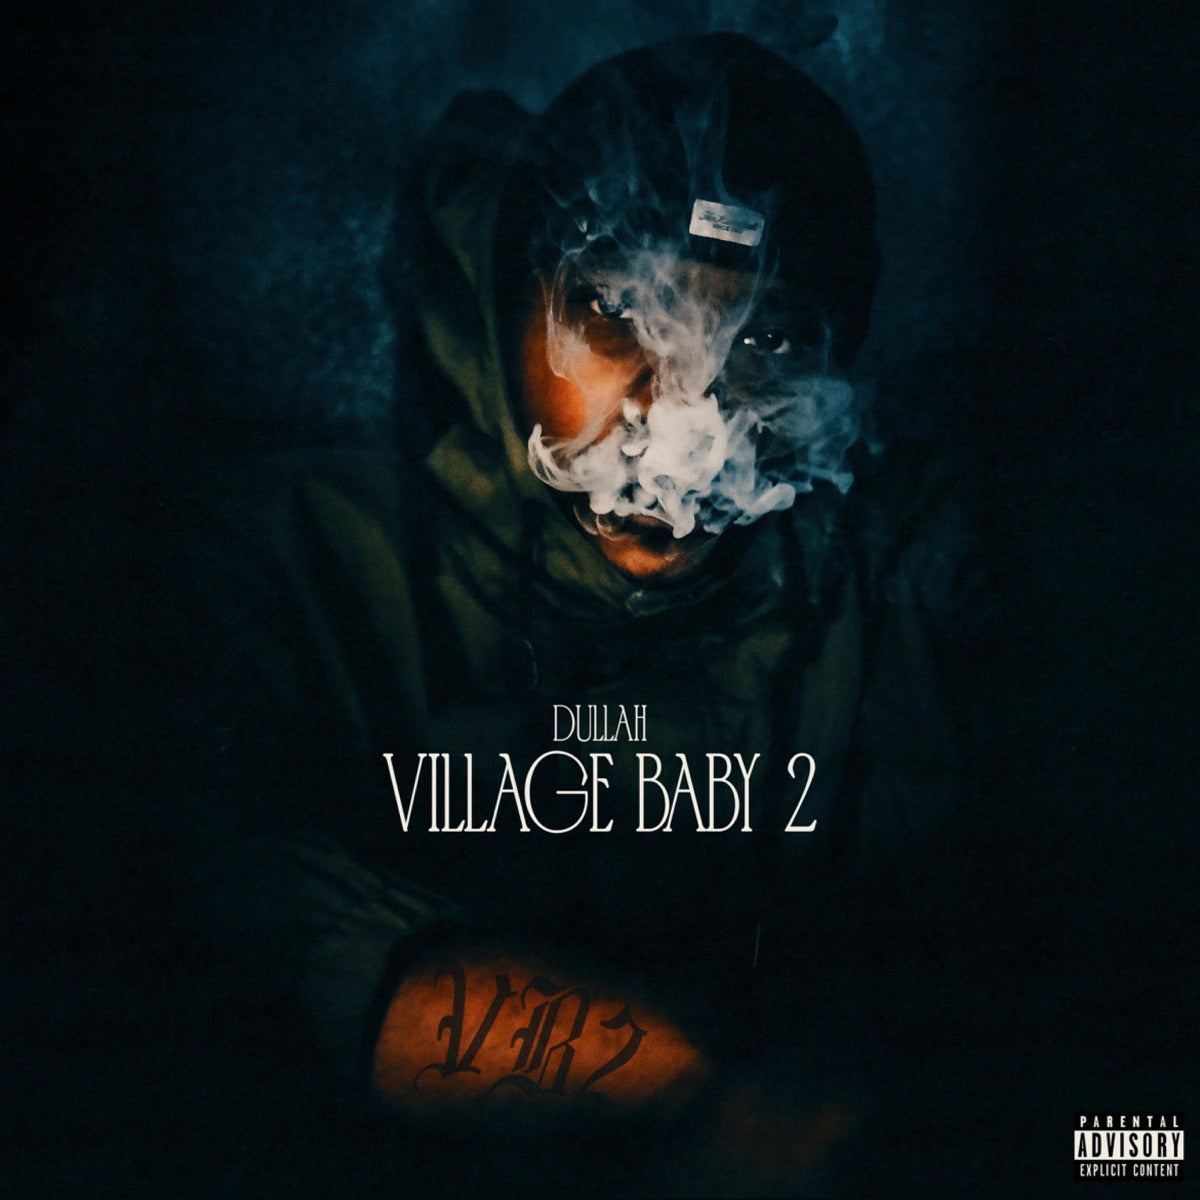 Dullah- Village Baby 2 [Album Review]